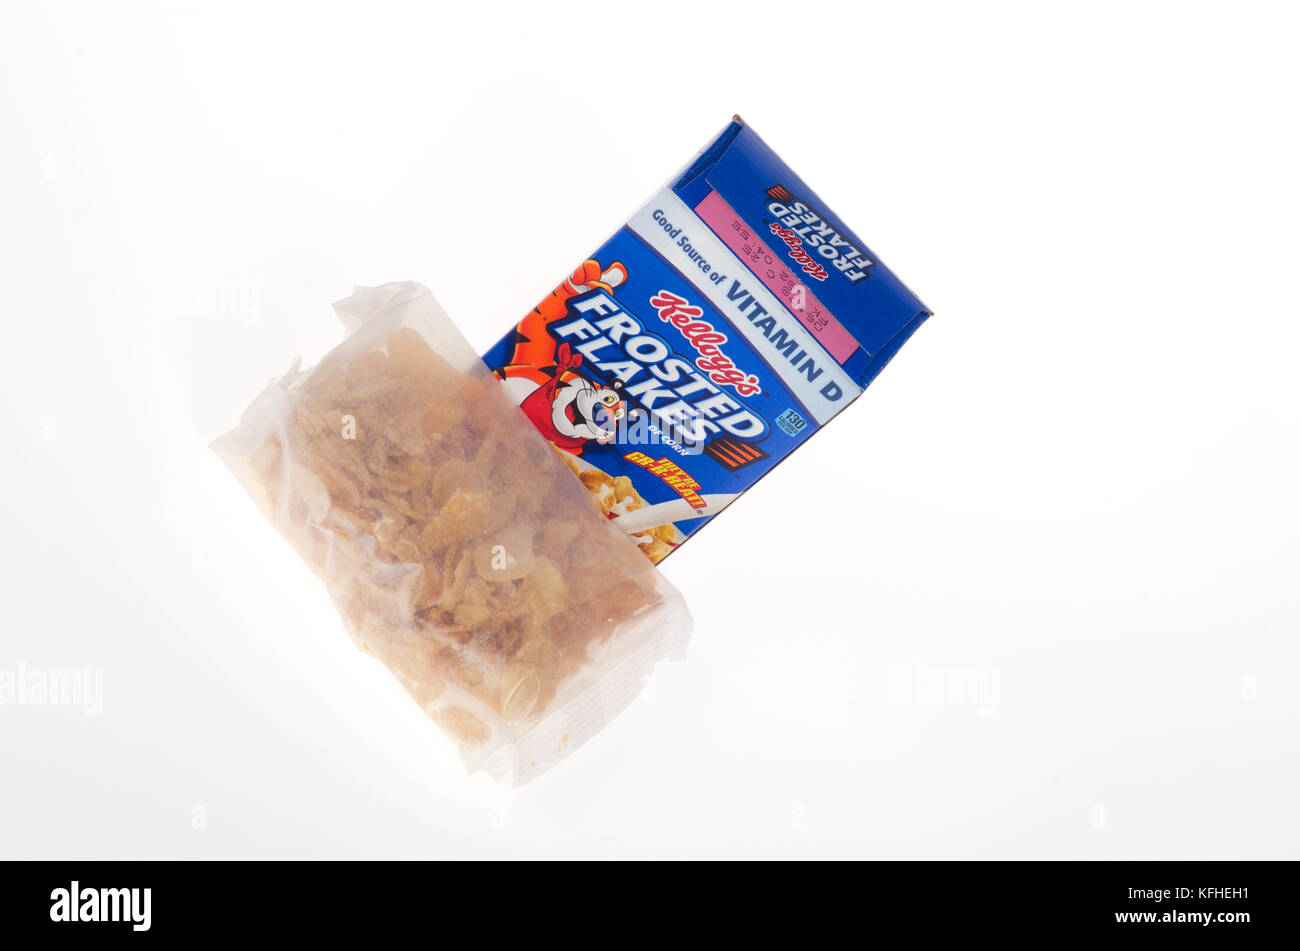 Kellogg's Frosted Flakes Müsli Box und Tasche Stockfoto